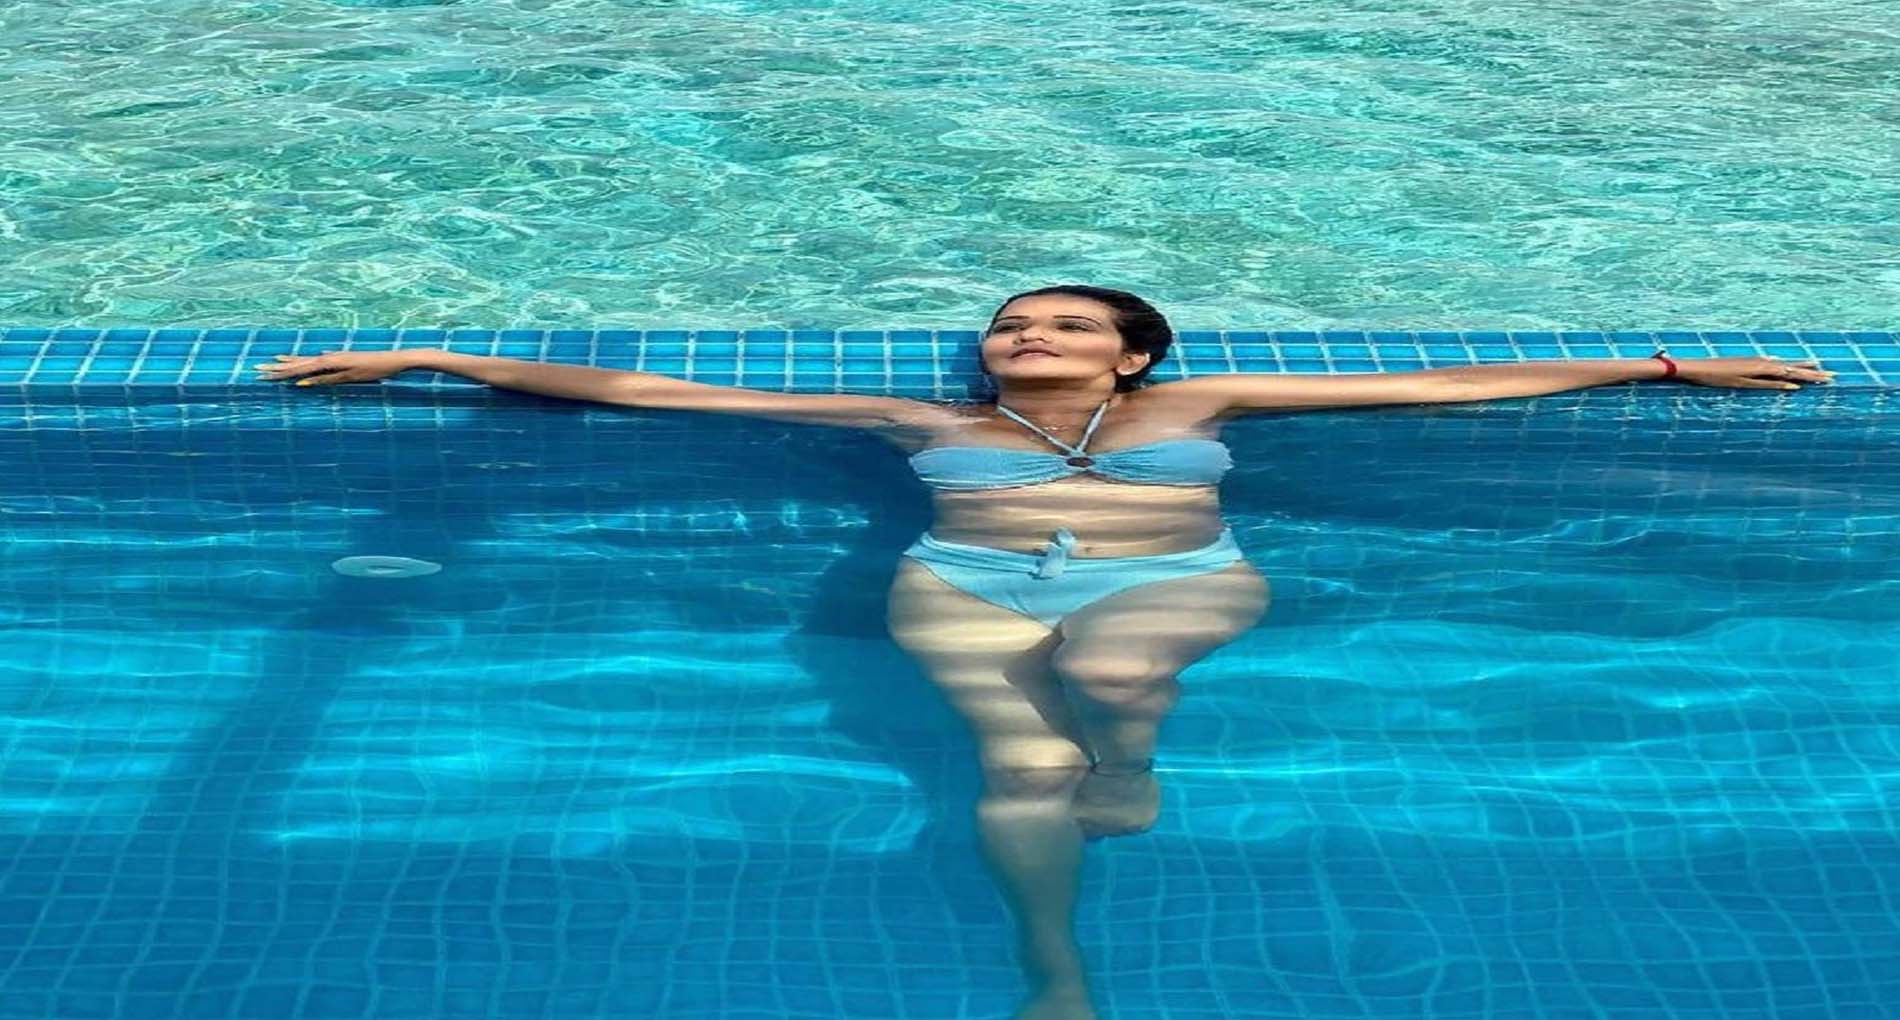 मोनालिसा ने ब्लू बिकिनी पहन पानी में लगाई ‘आग’! सोशल मीडिया पर फोटो हुई वायरल